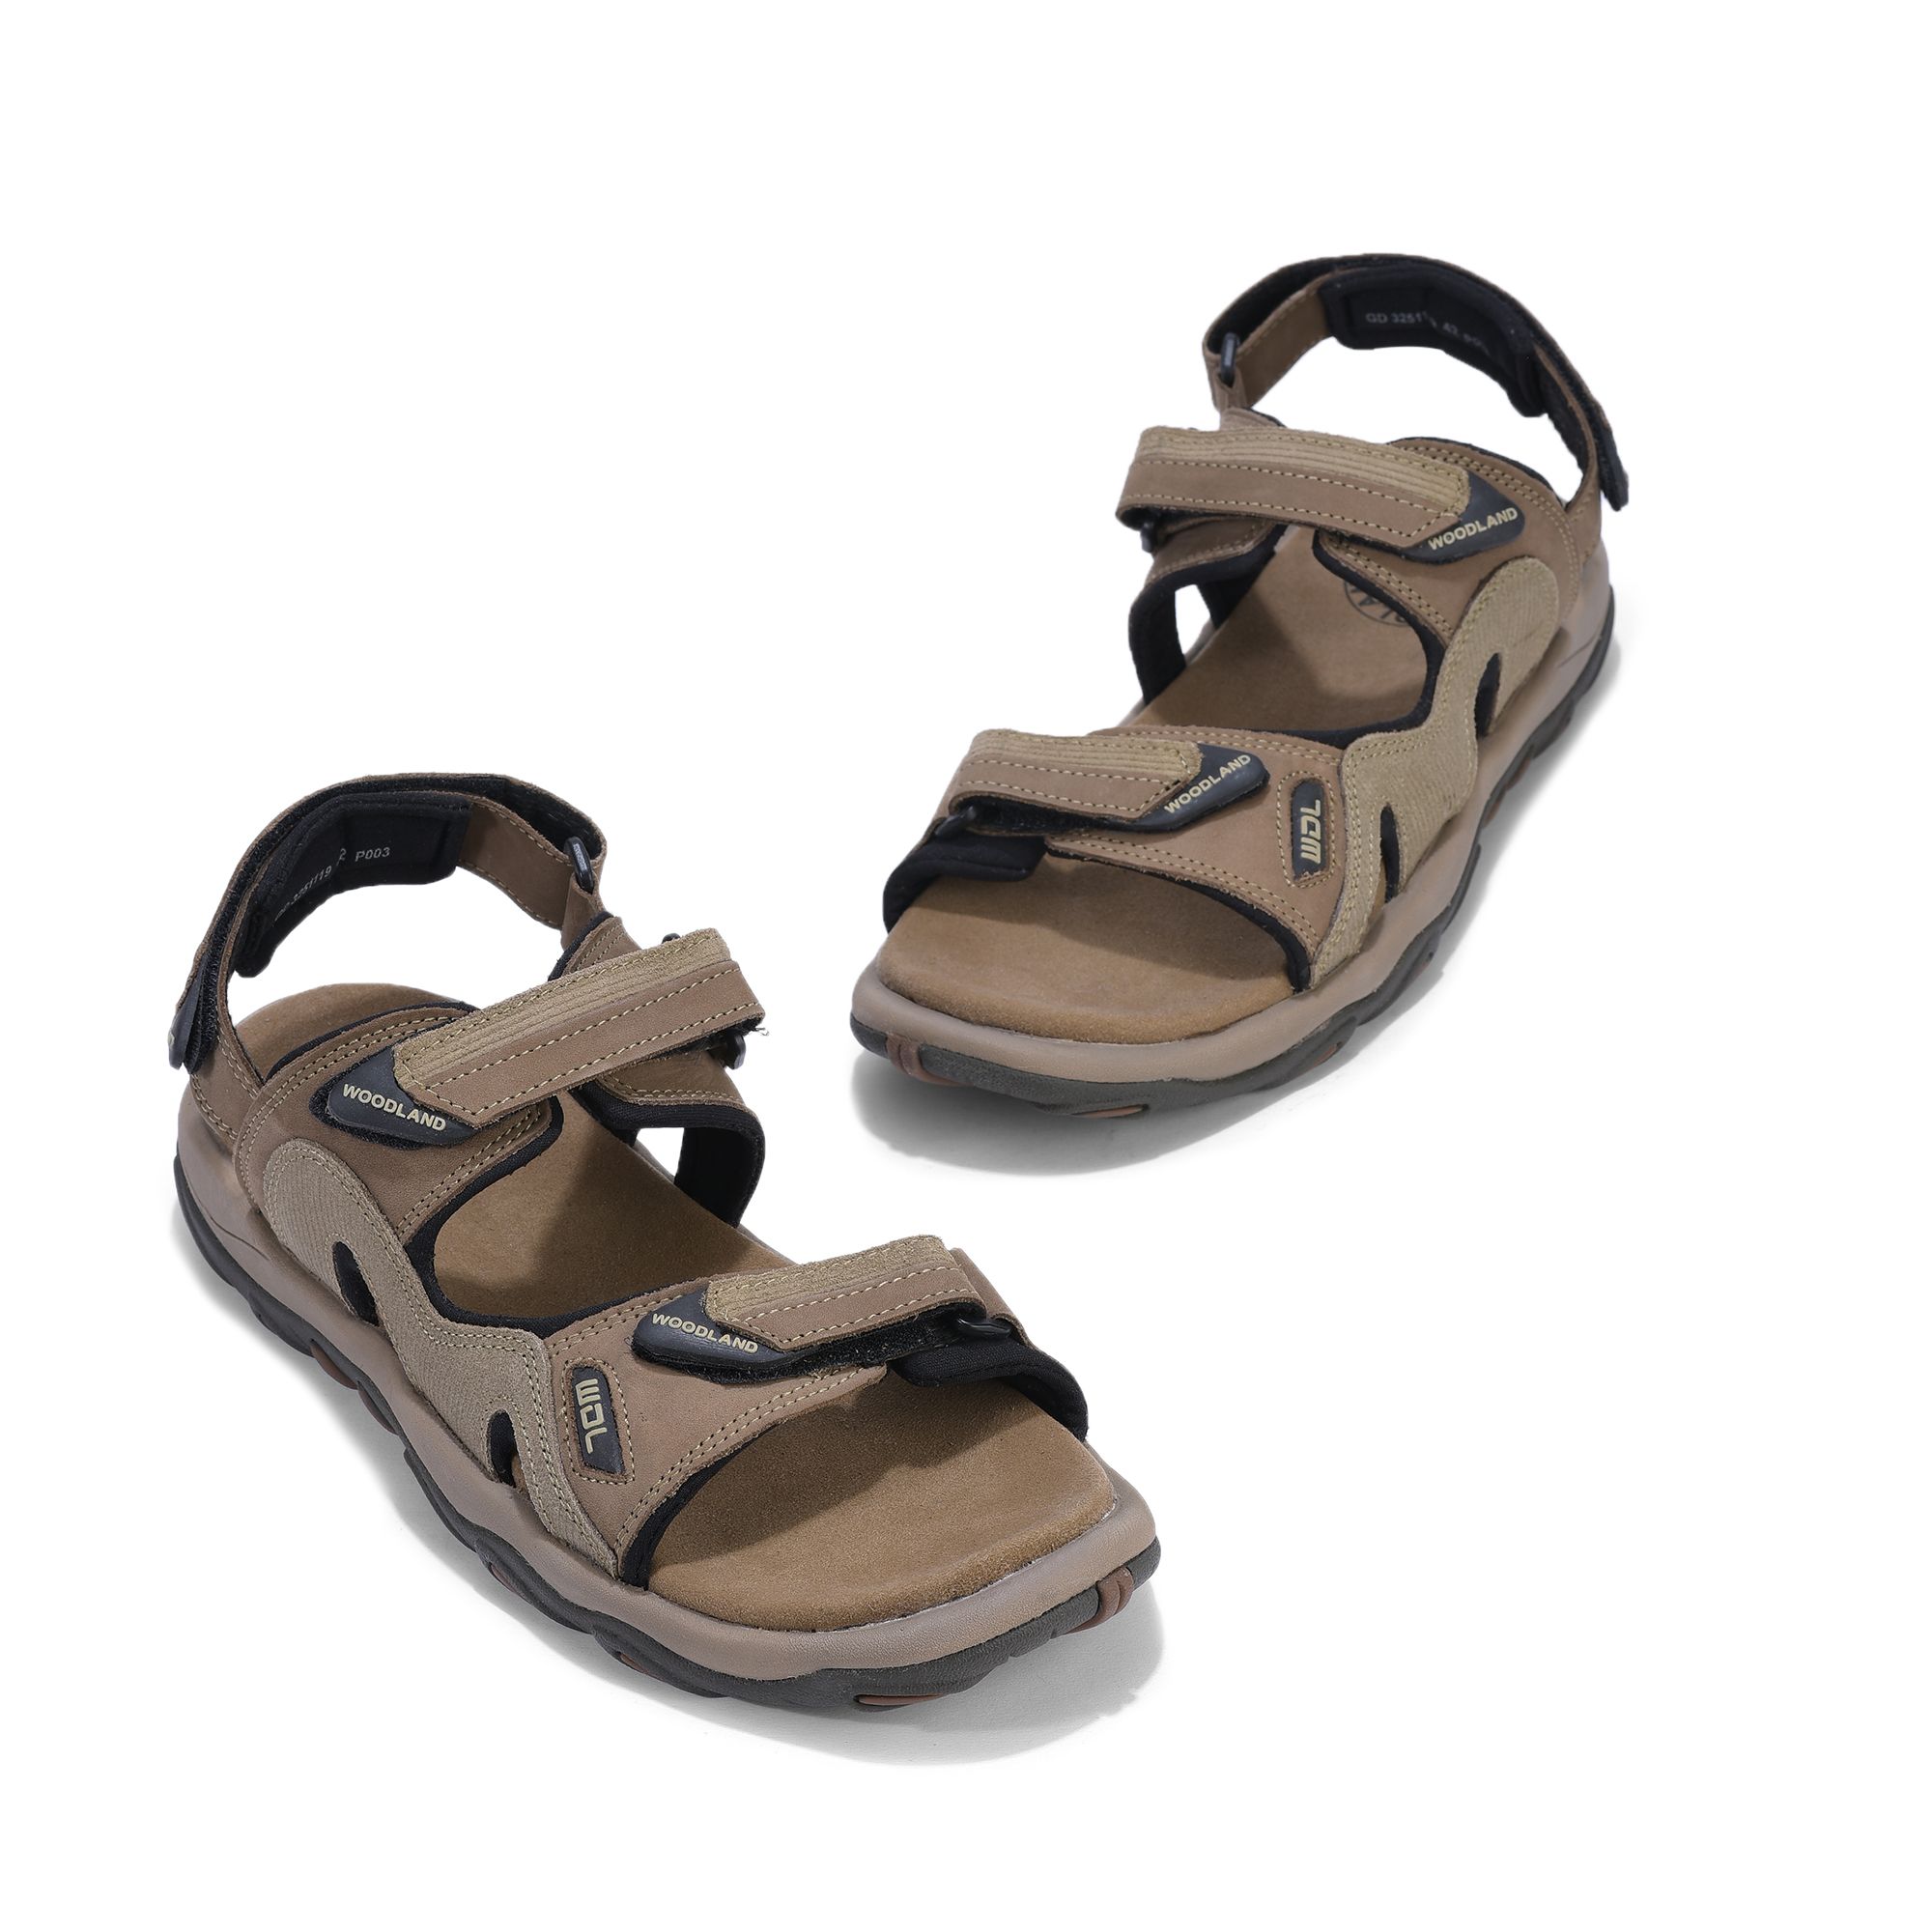 Khaki floater sandal for men